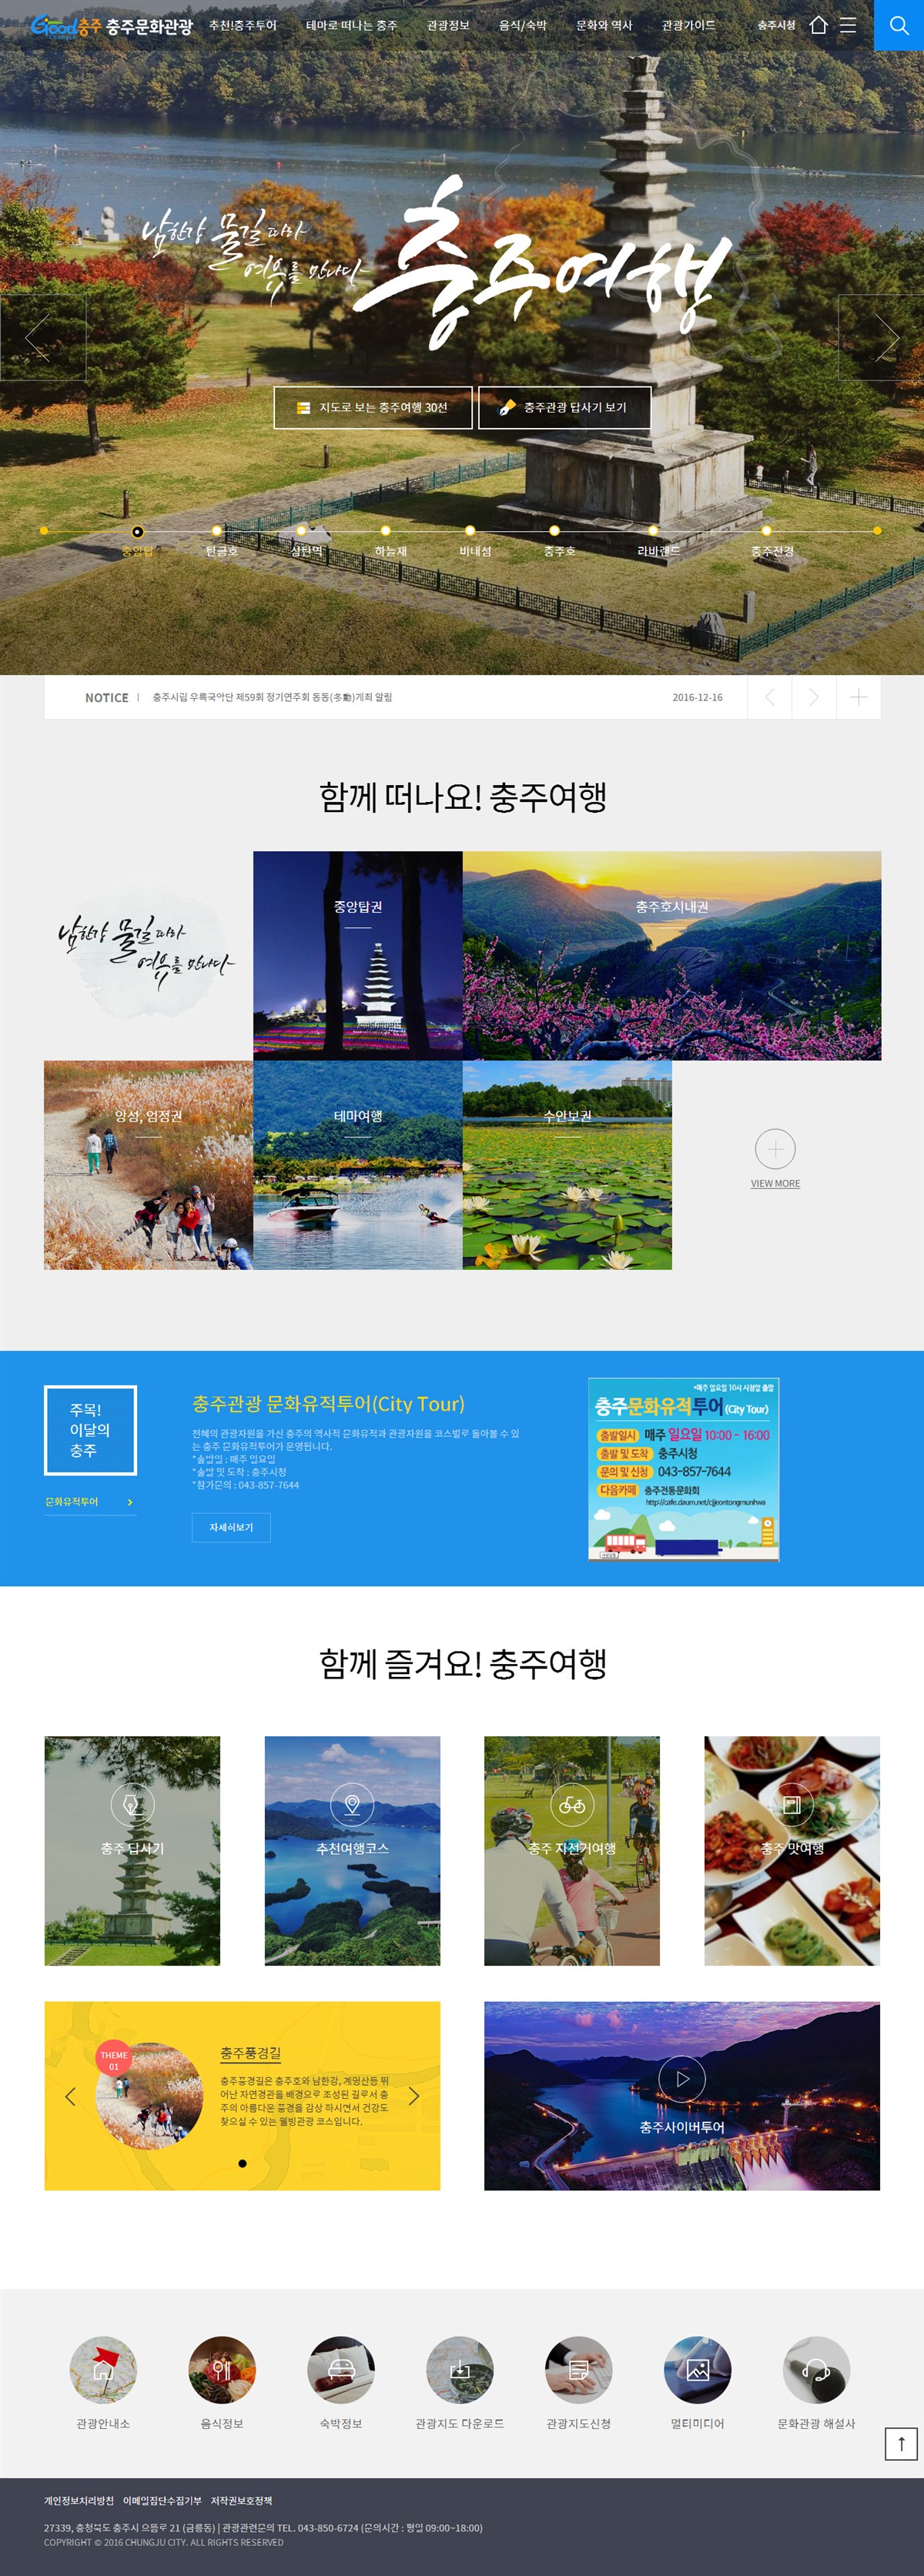 韩国某旅游网站界面设计